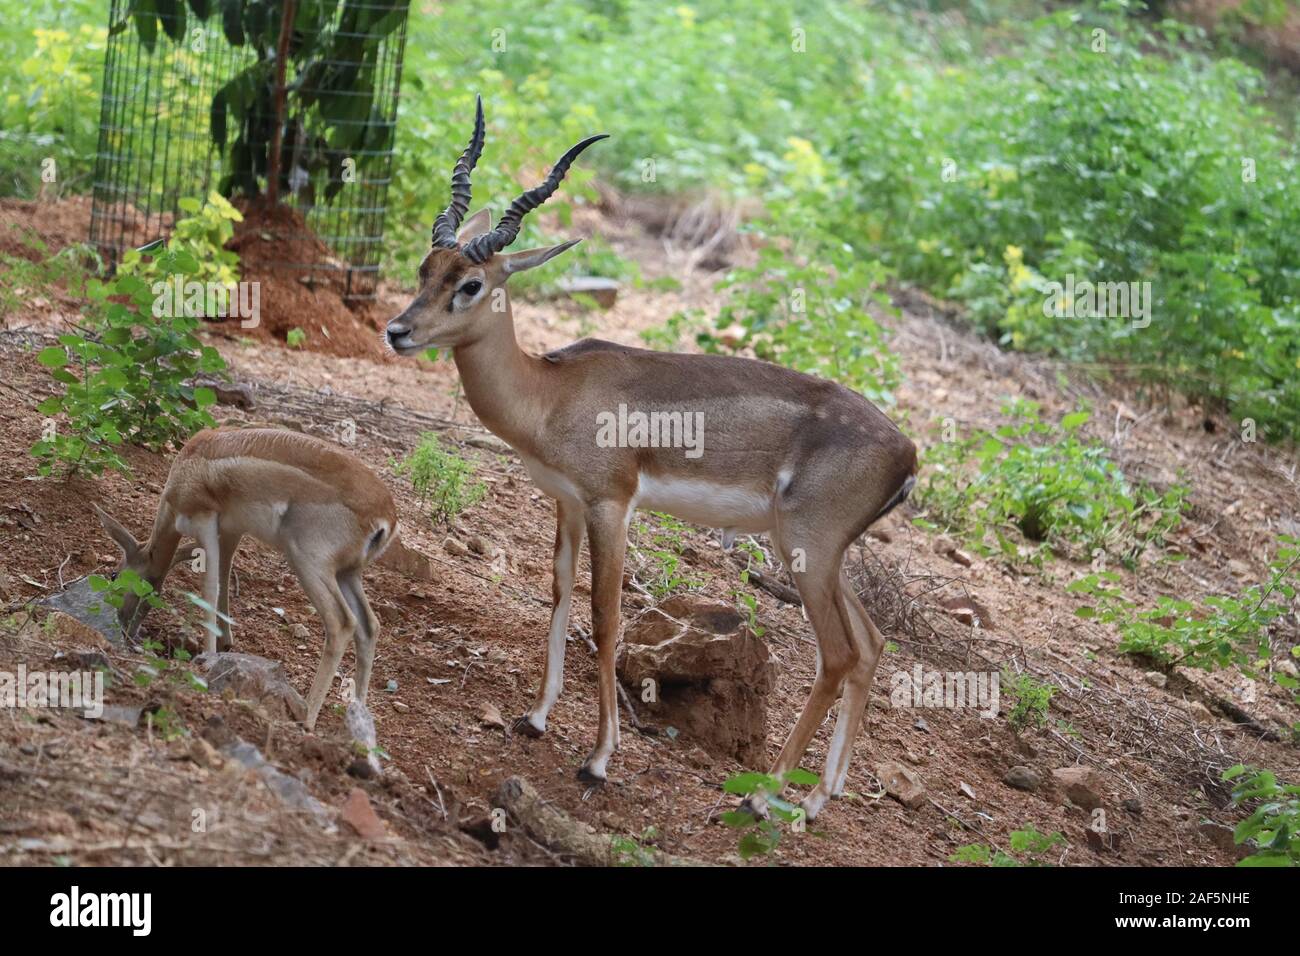 Herde von Impala Antilope im natürlichen Lebensraum. Eine männliche Impala steuert seinen Harem von Frauen Stockfoto